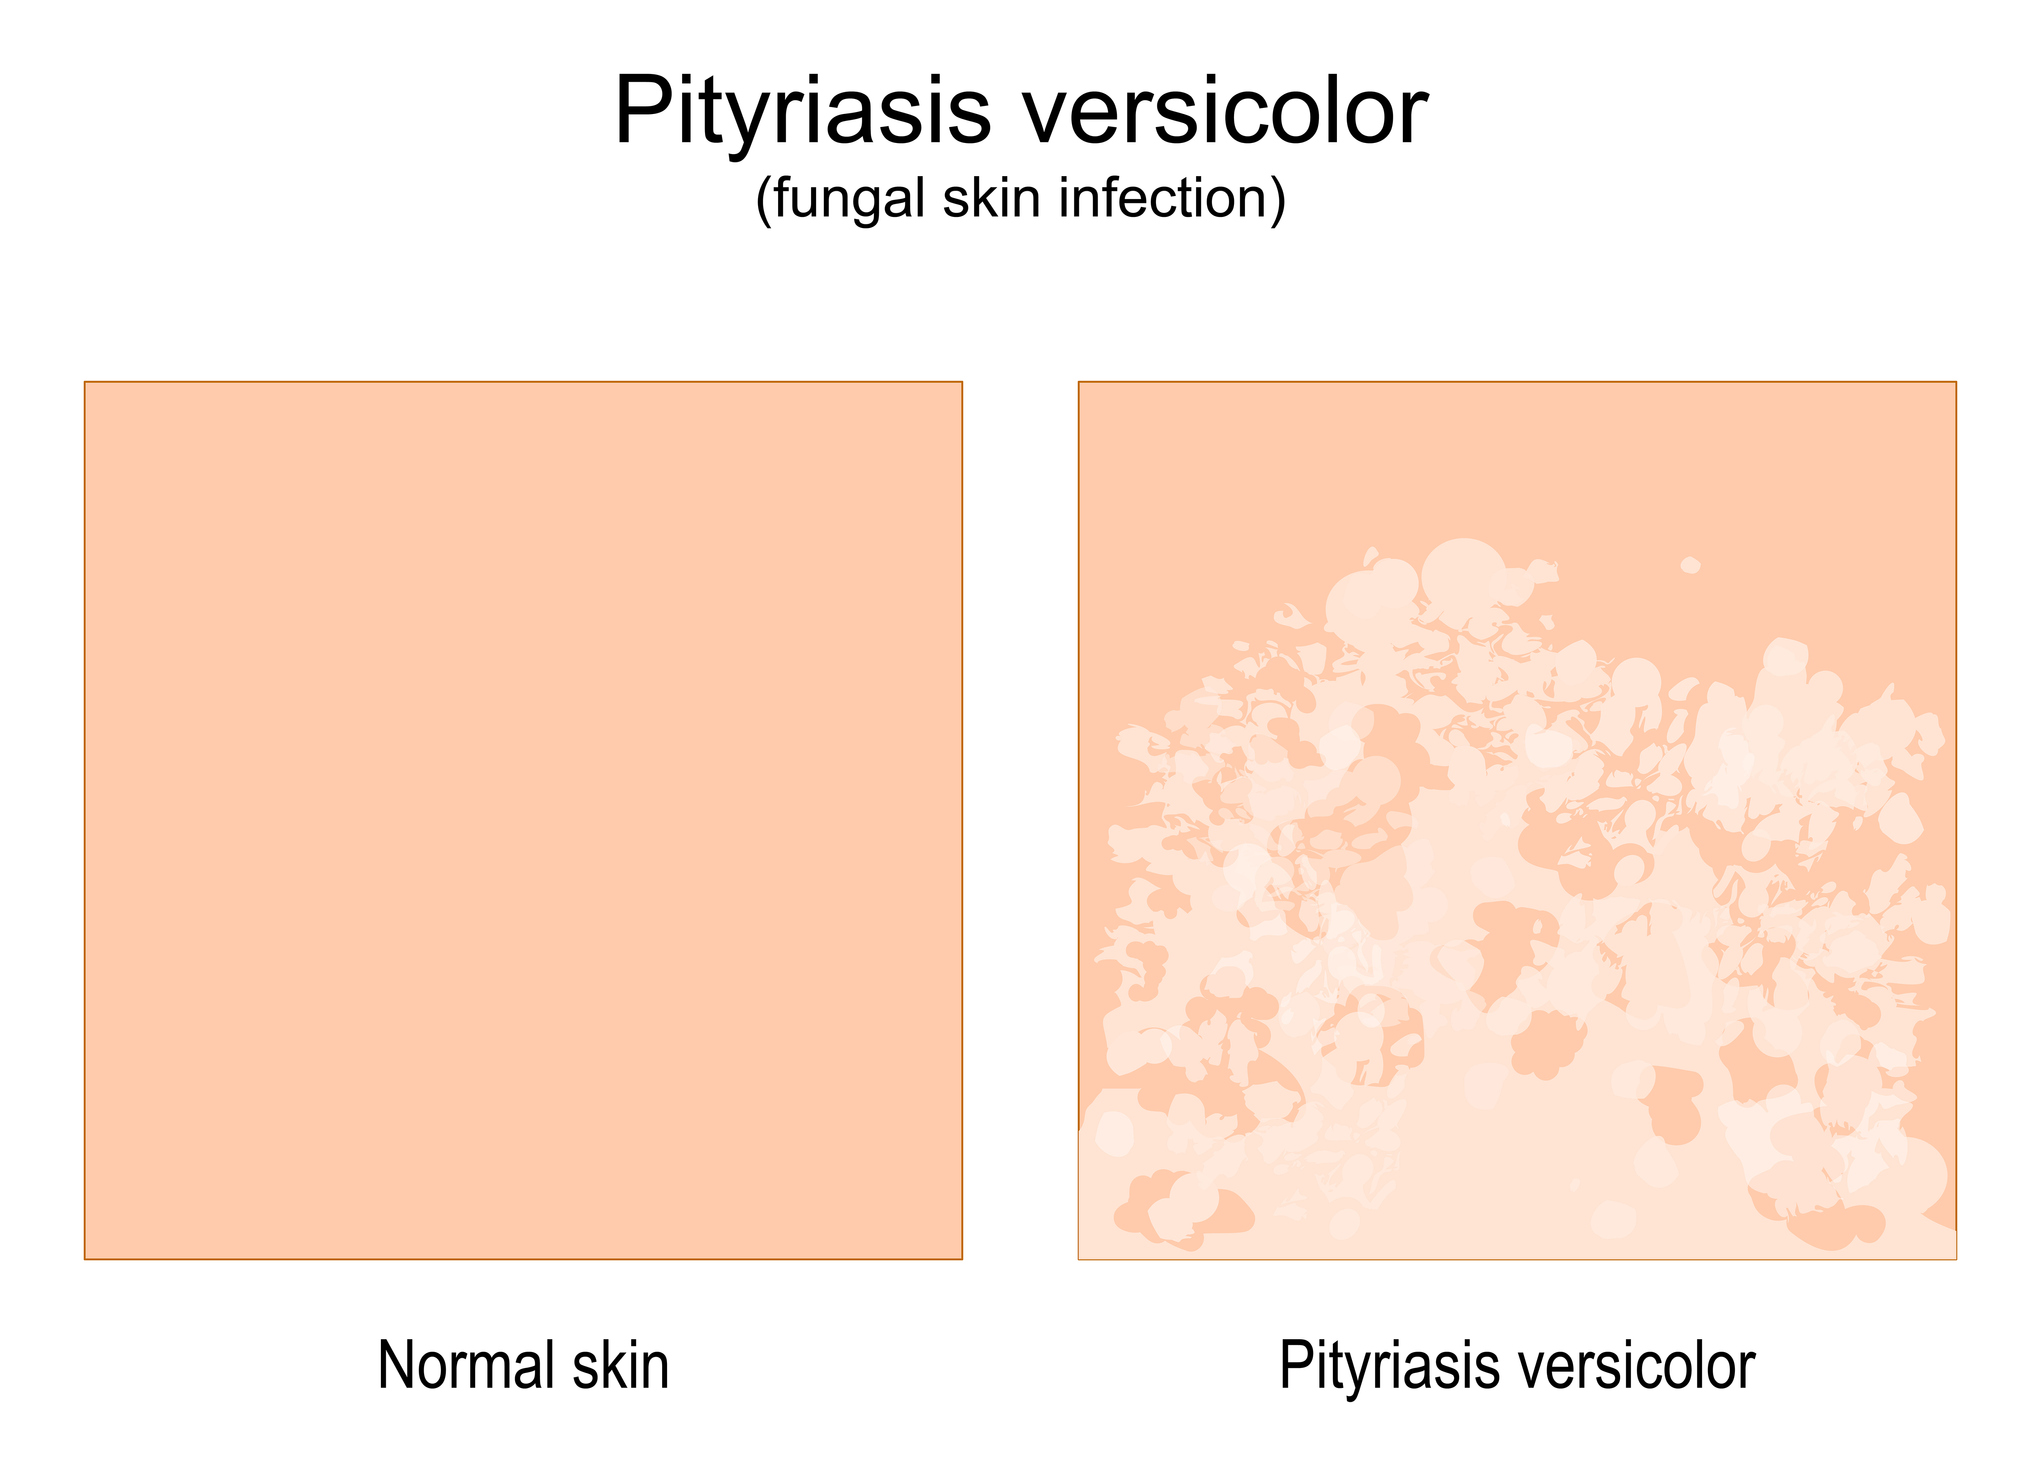 Srovnání normální kůže a kůže se známkami onemocnění